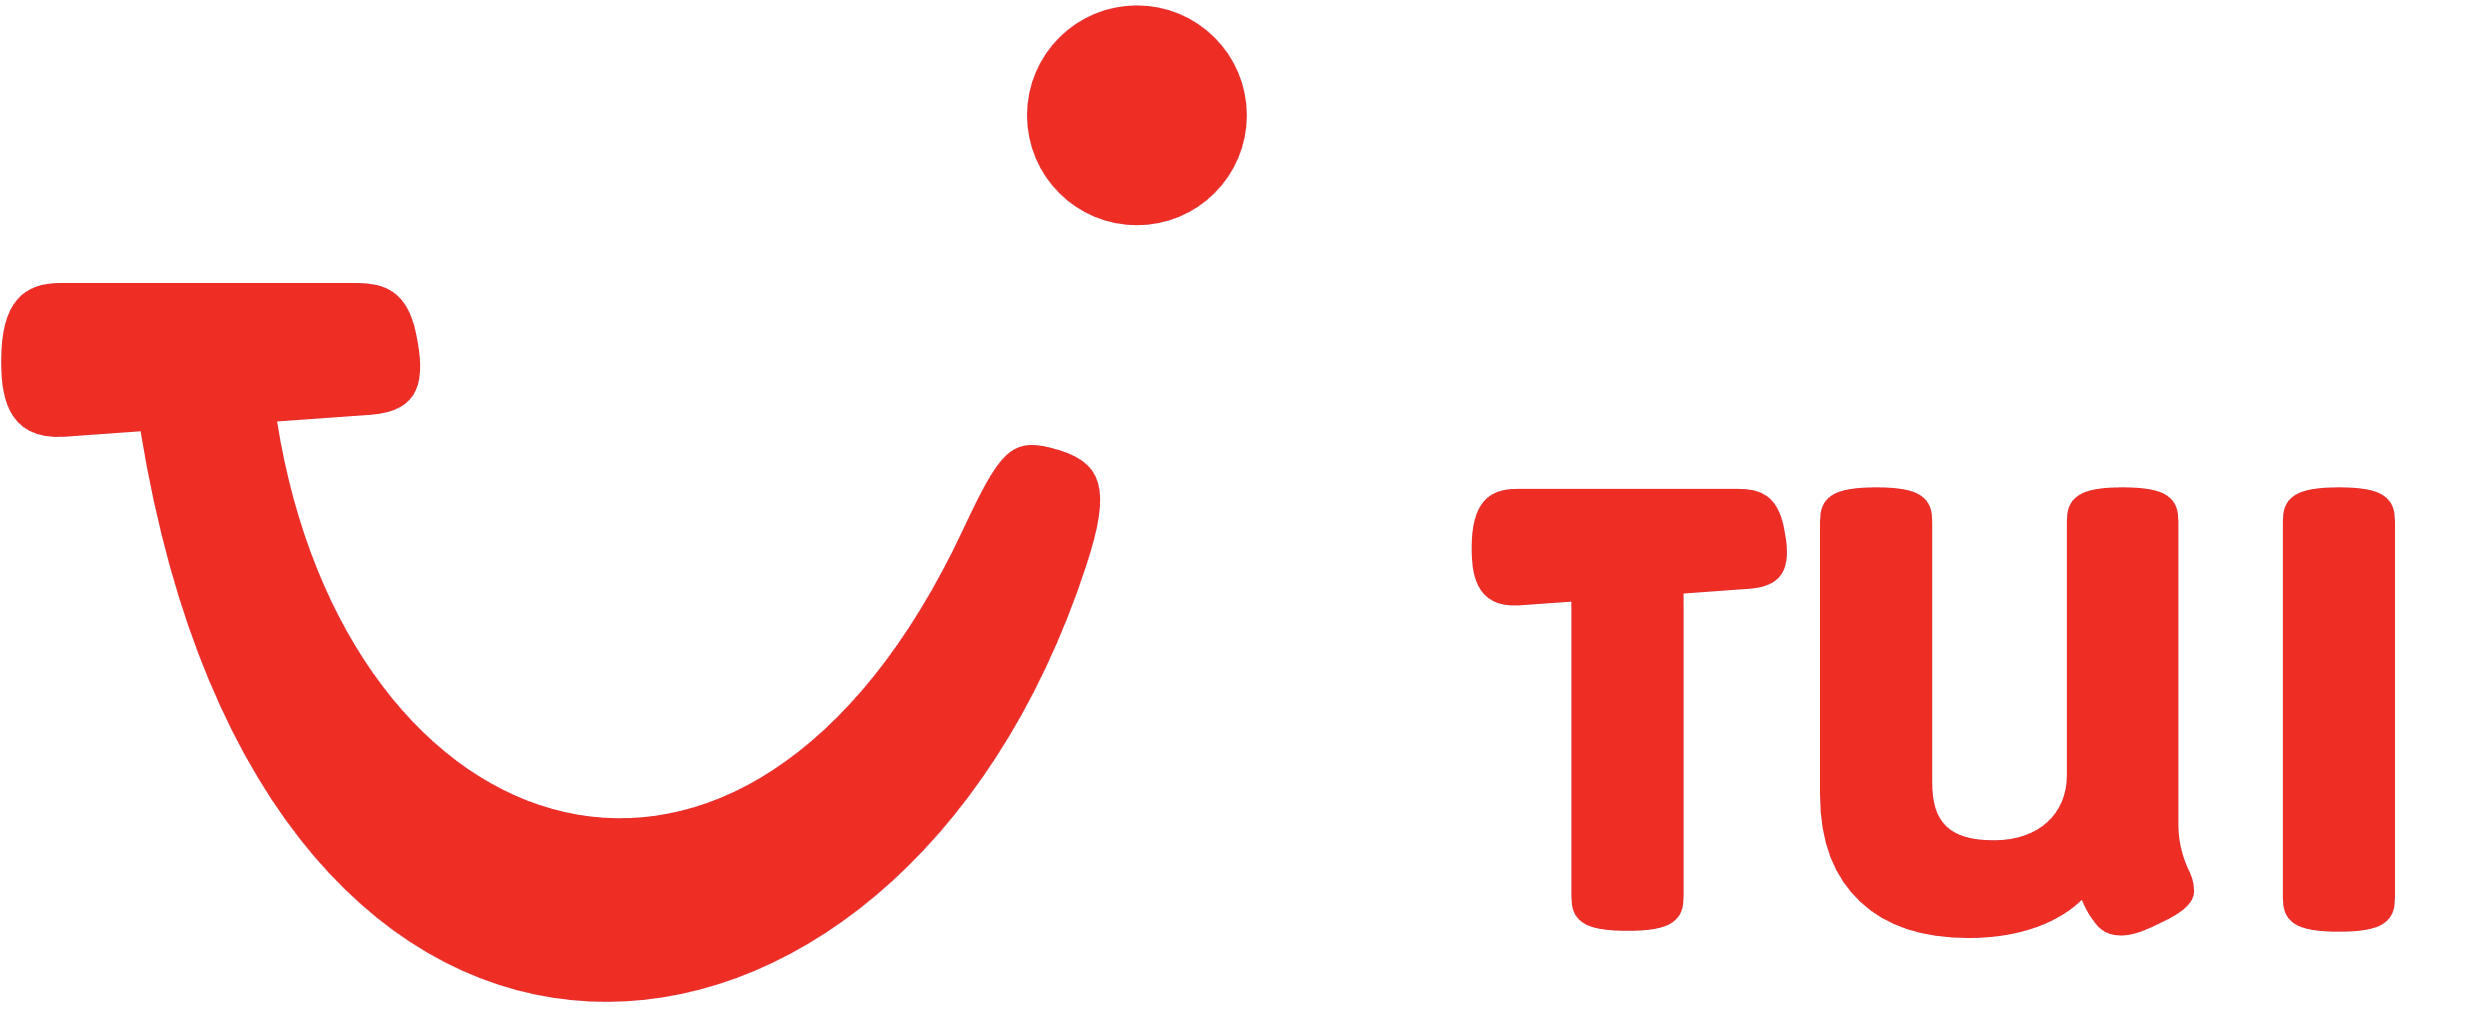 TUI – Logos Download